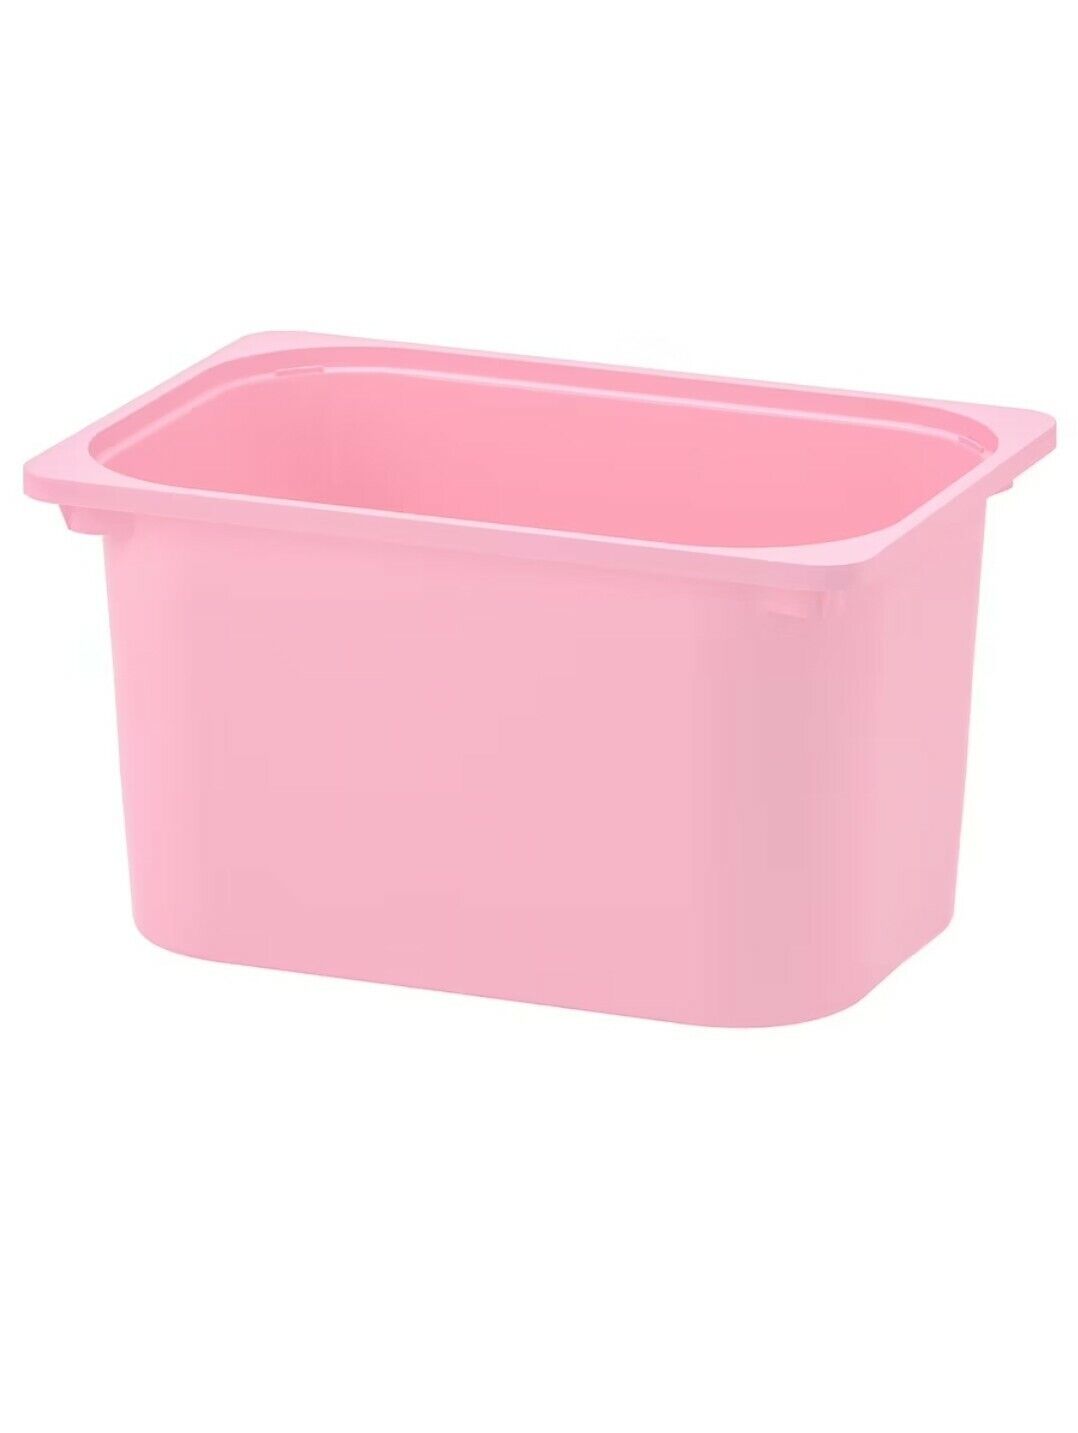 NEW Ikea Trofast Large Pink Toy Storage Bin 16.5 x 11.75 x 9